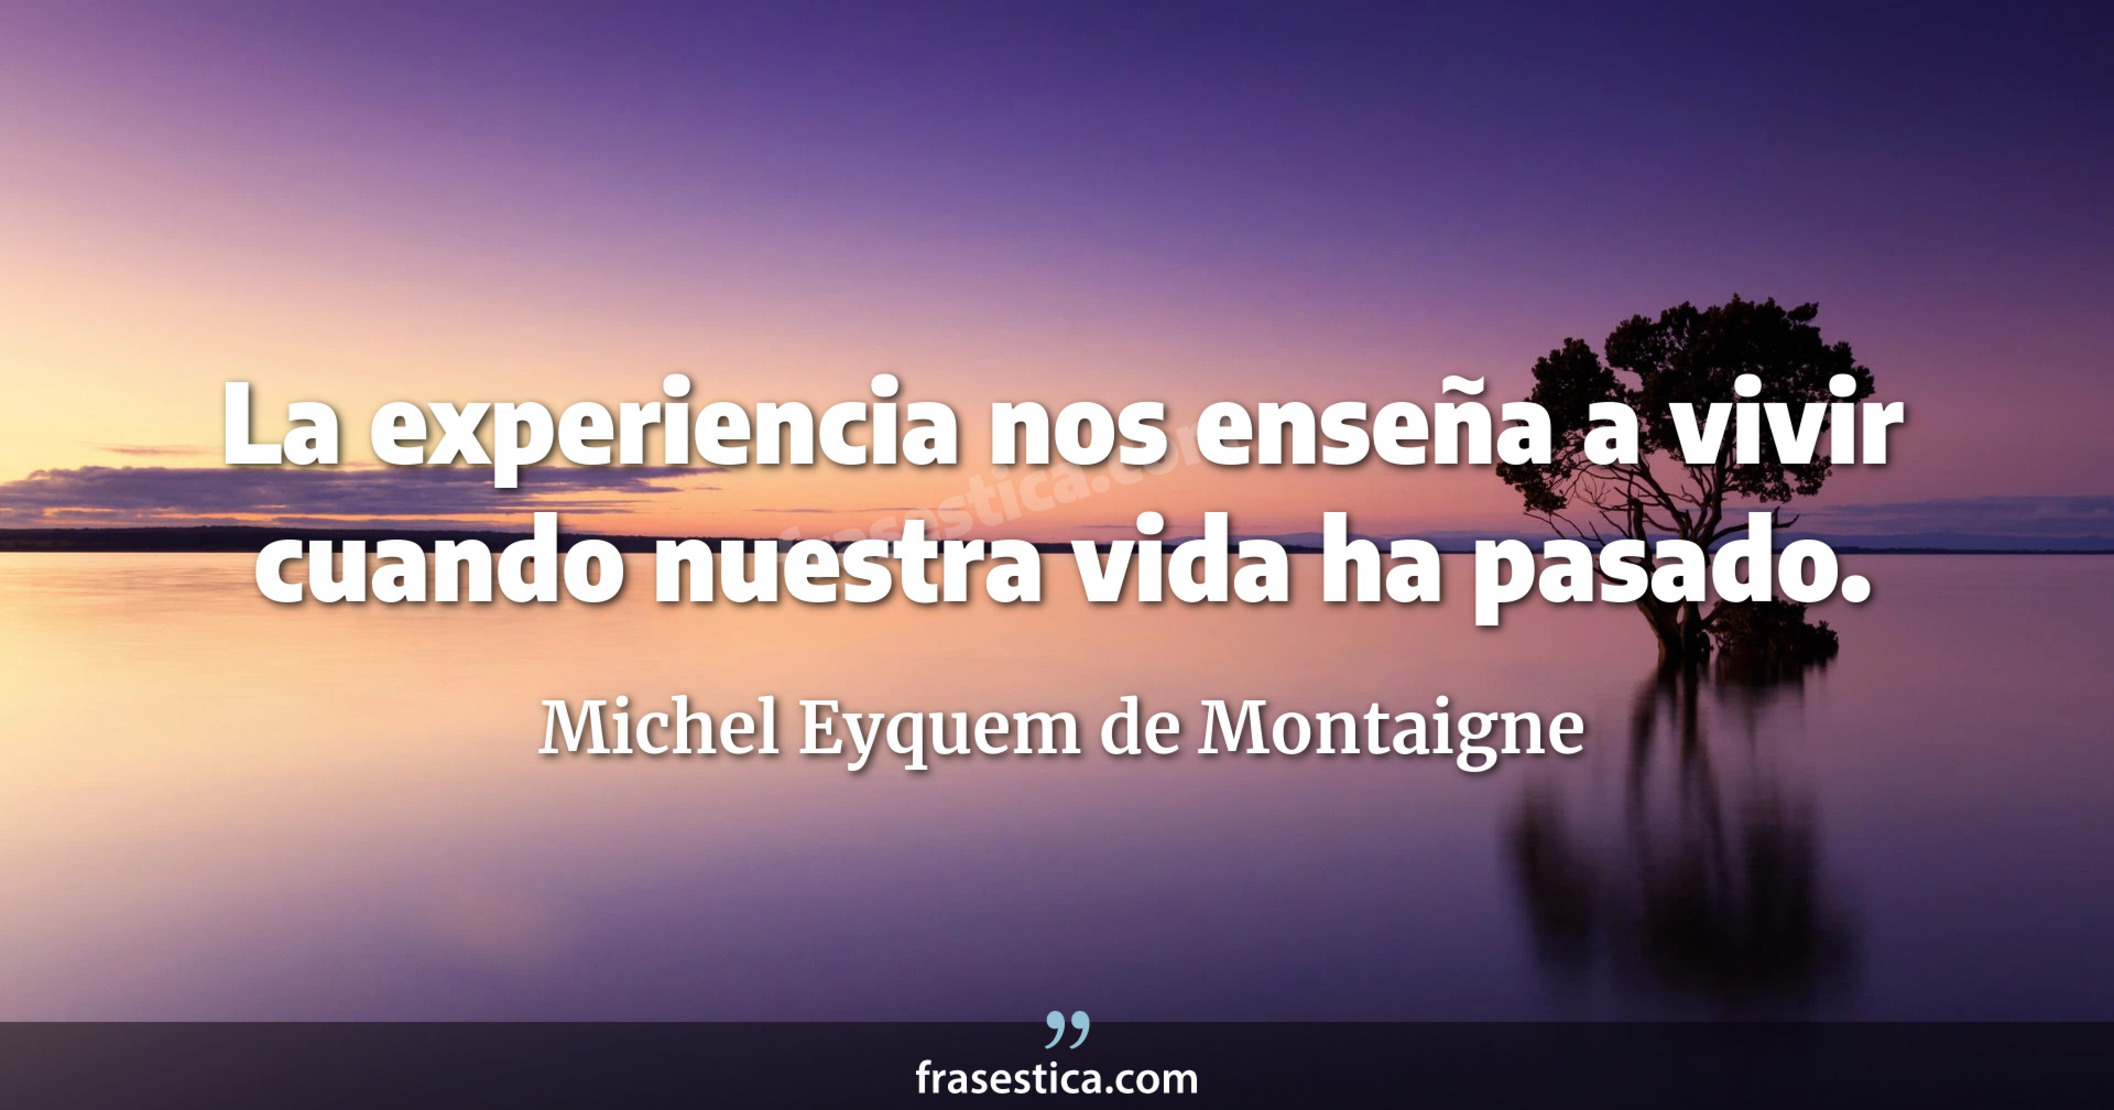 La experiencia nos enseña a vivir cuando nuestra vida ha pasado. - Michel Eyquem de Montaigne